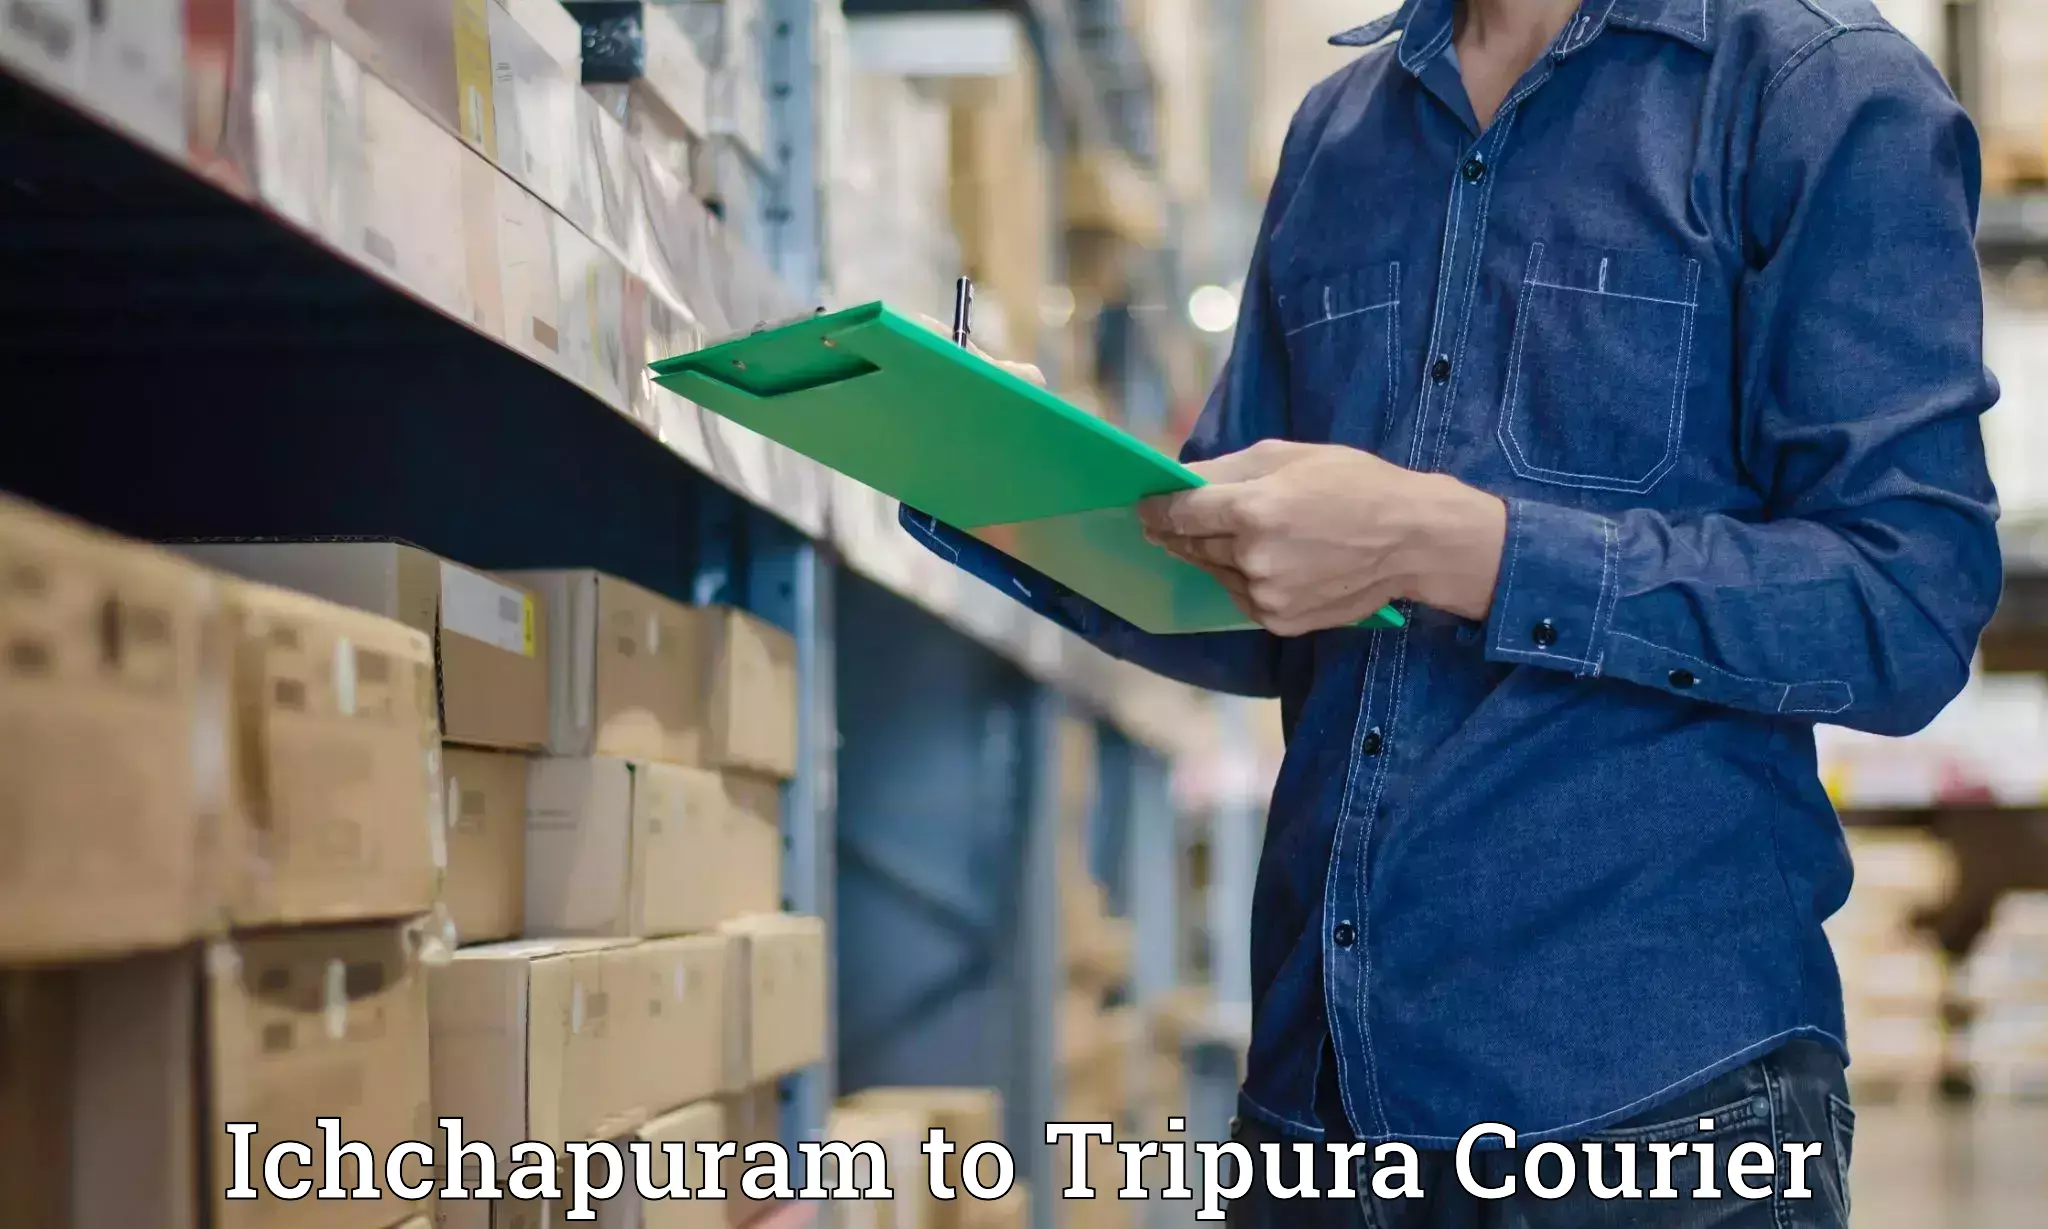 Advanced delivery network Ichchapuram to Manu Bazar